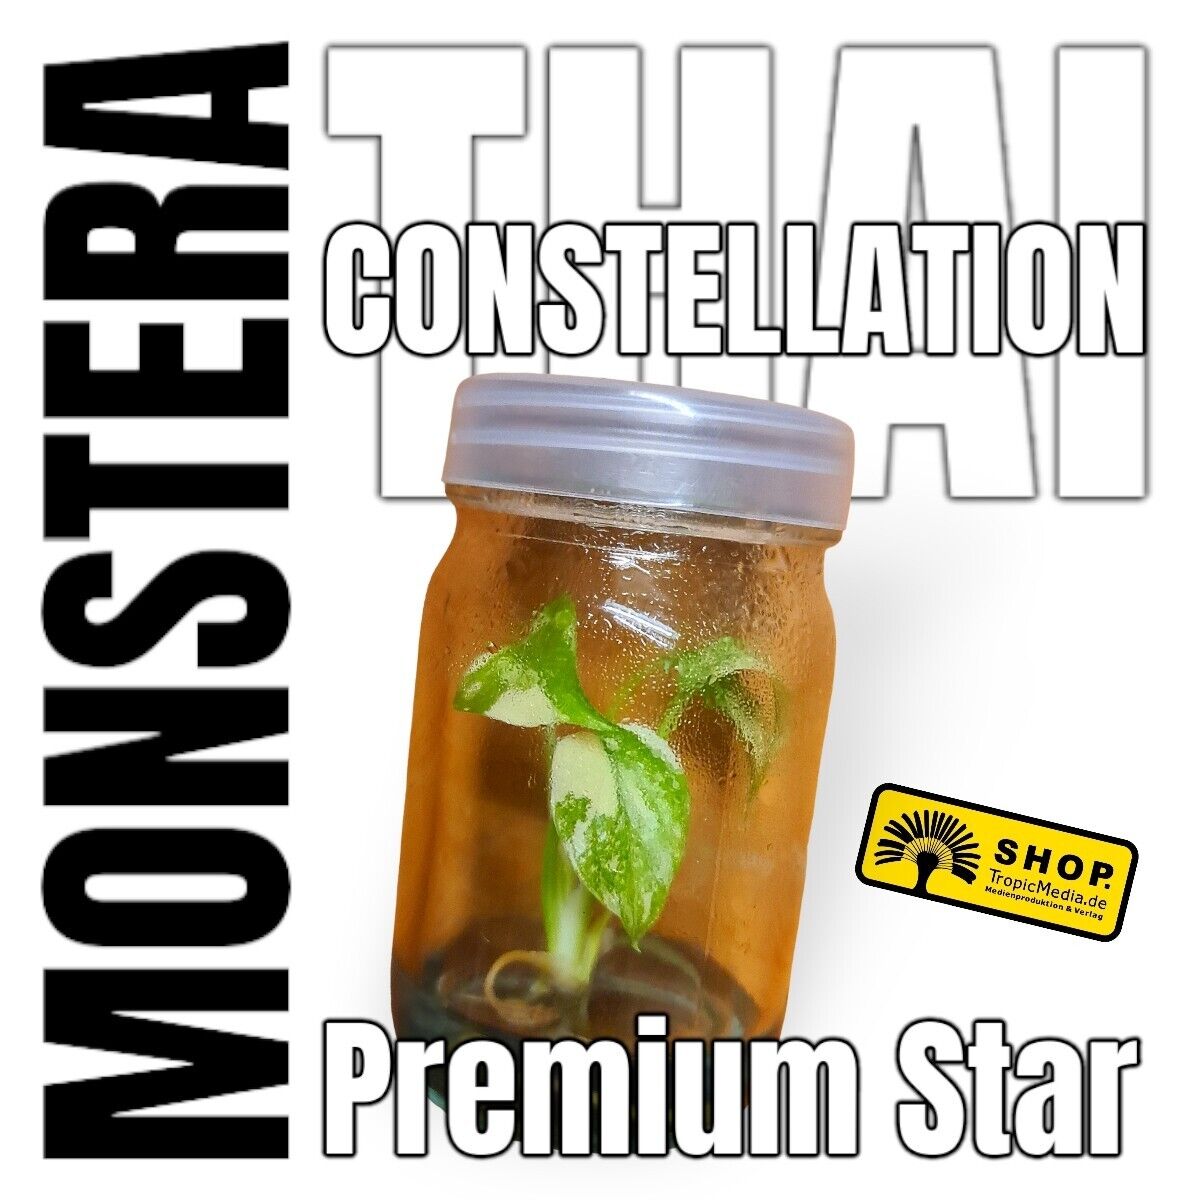 Monstera Thai Constellation Premium Star Tissue Culture (TC)